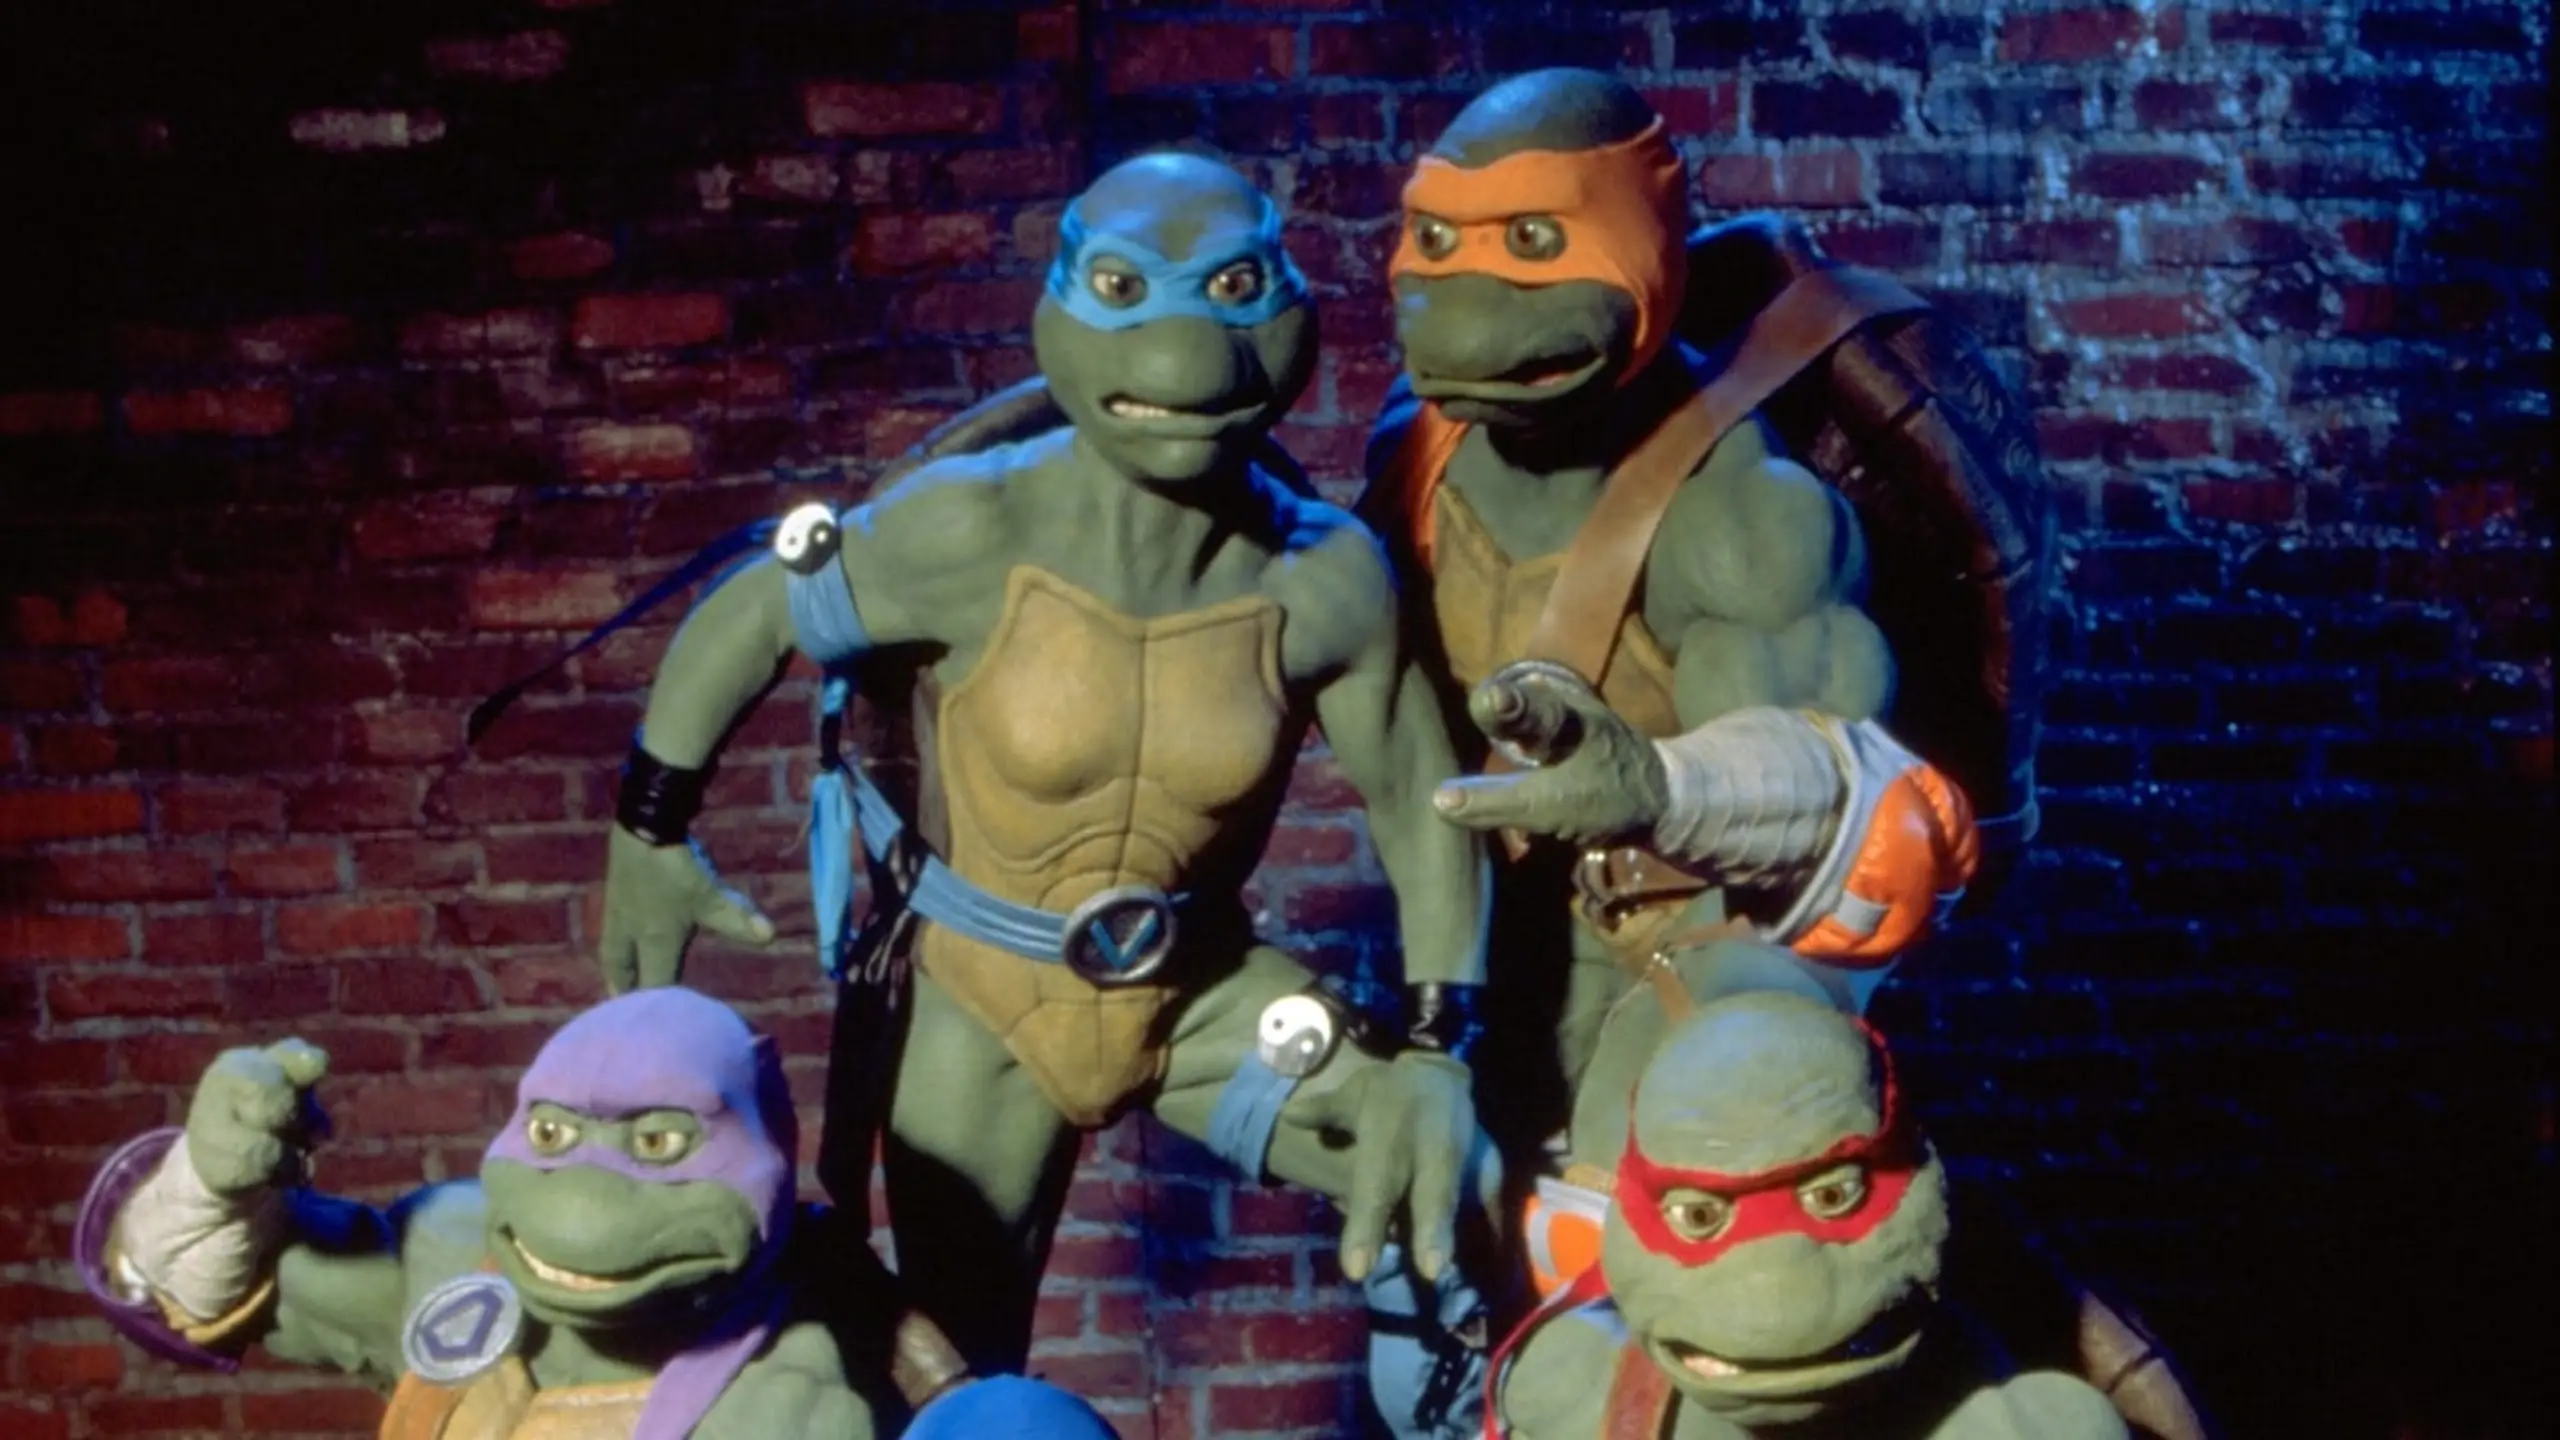 Die Ninja-Turtles